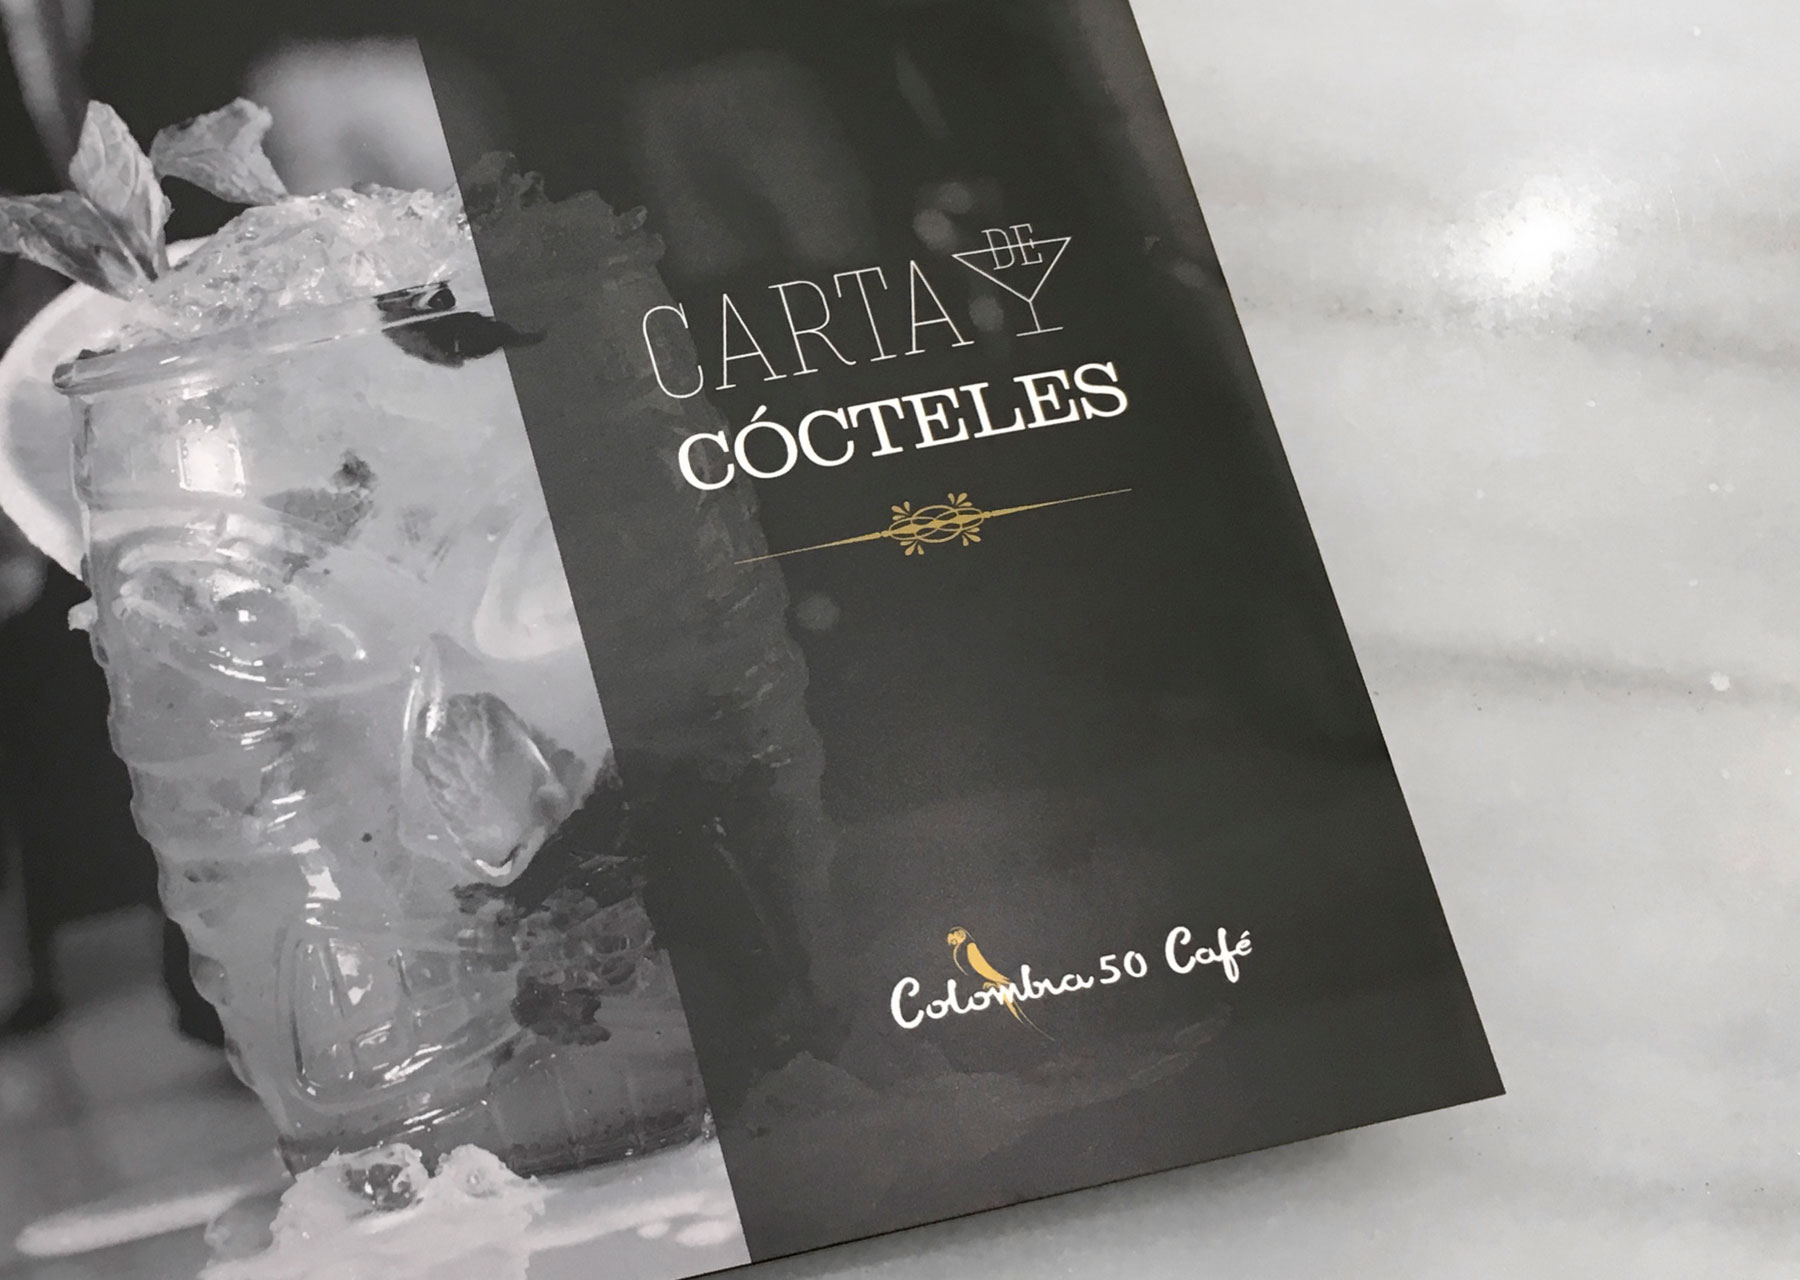 colombia 50 portada carta de cocteles - javier real